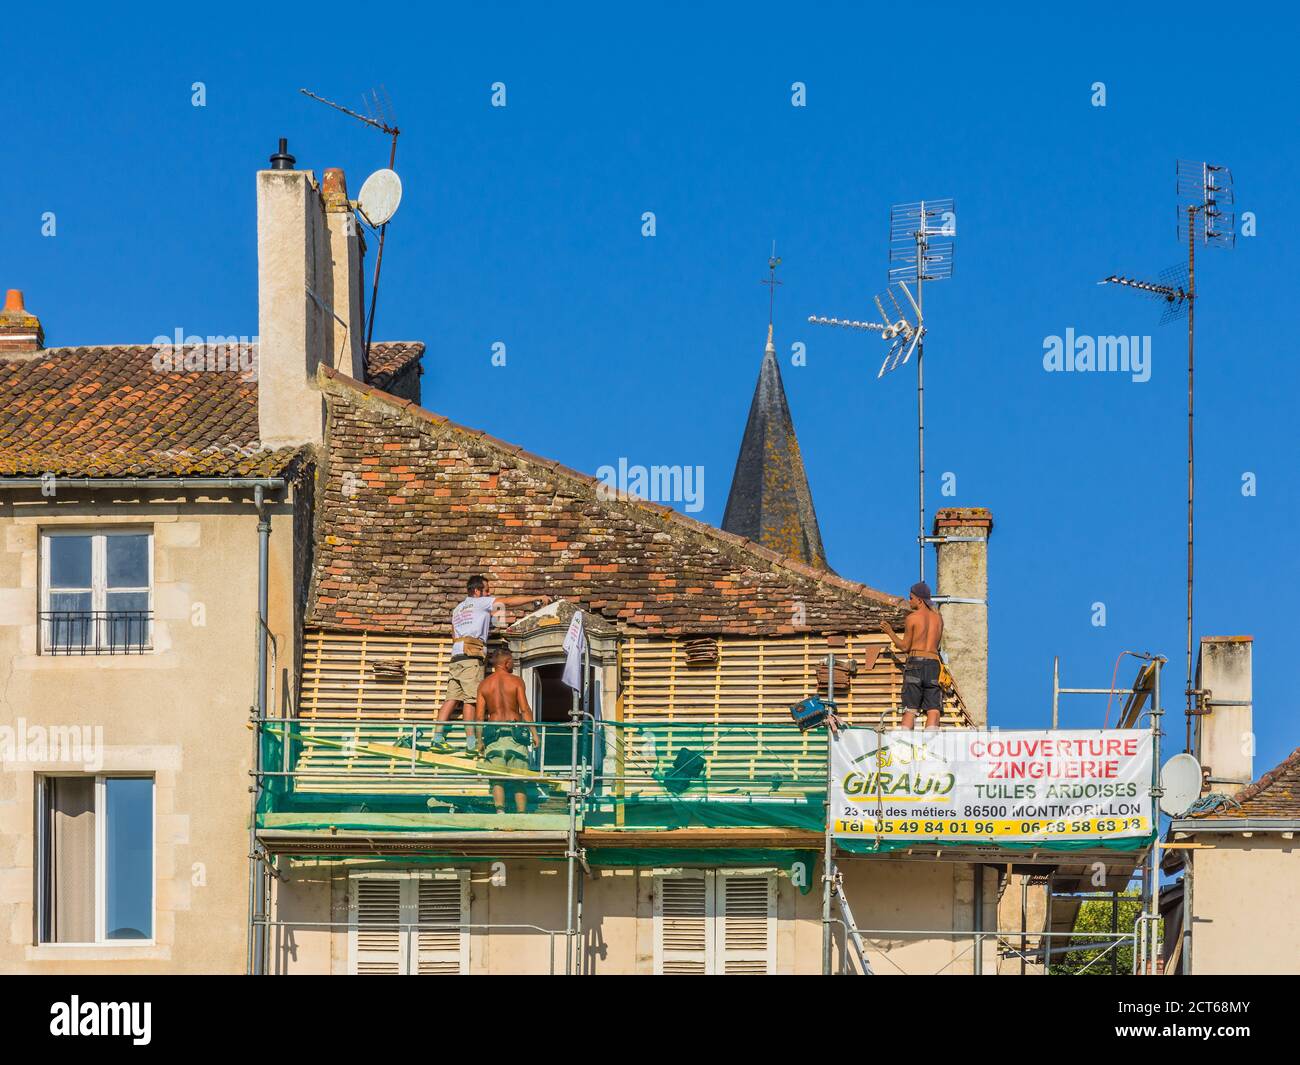 Ouvriers de toitures remplaçant lattes en bois et tuiles en argile sur le vieux bâtiment - Montmorillon, Vienne (86), France. Banque D'Images